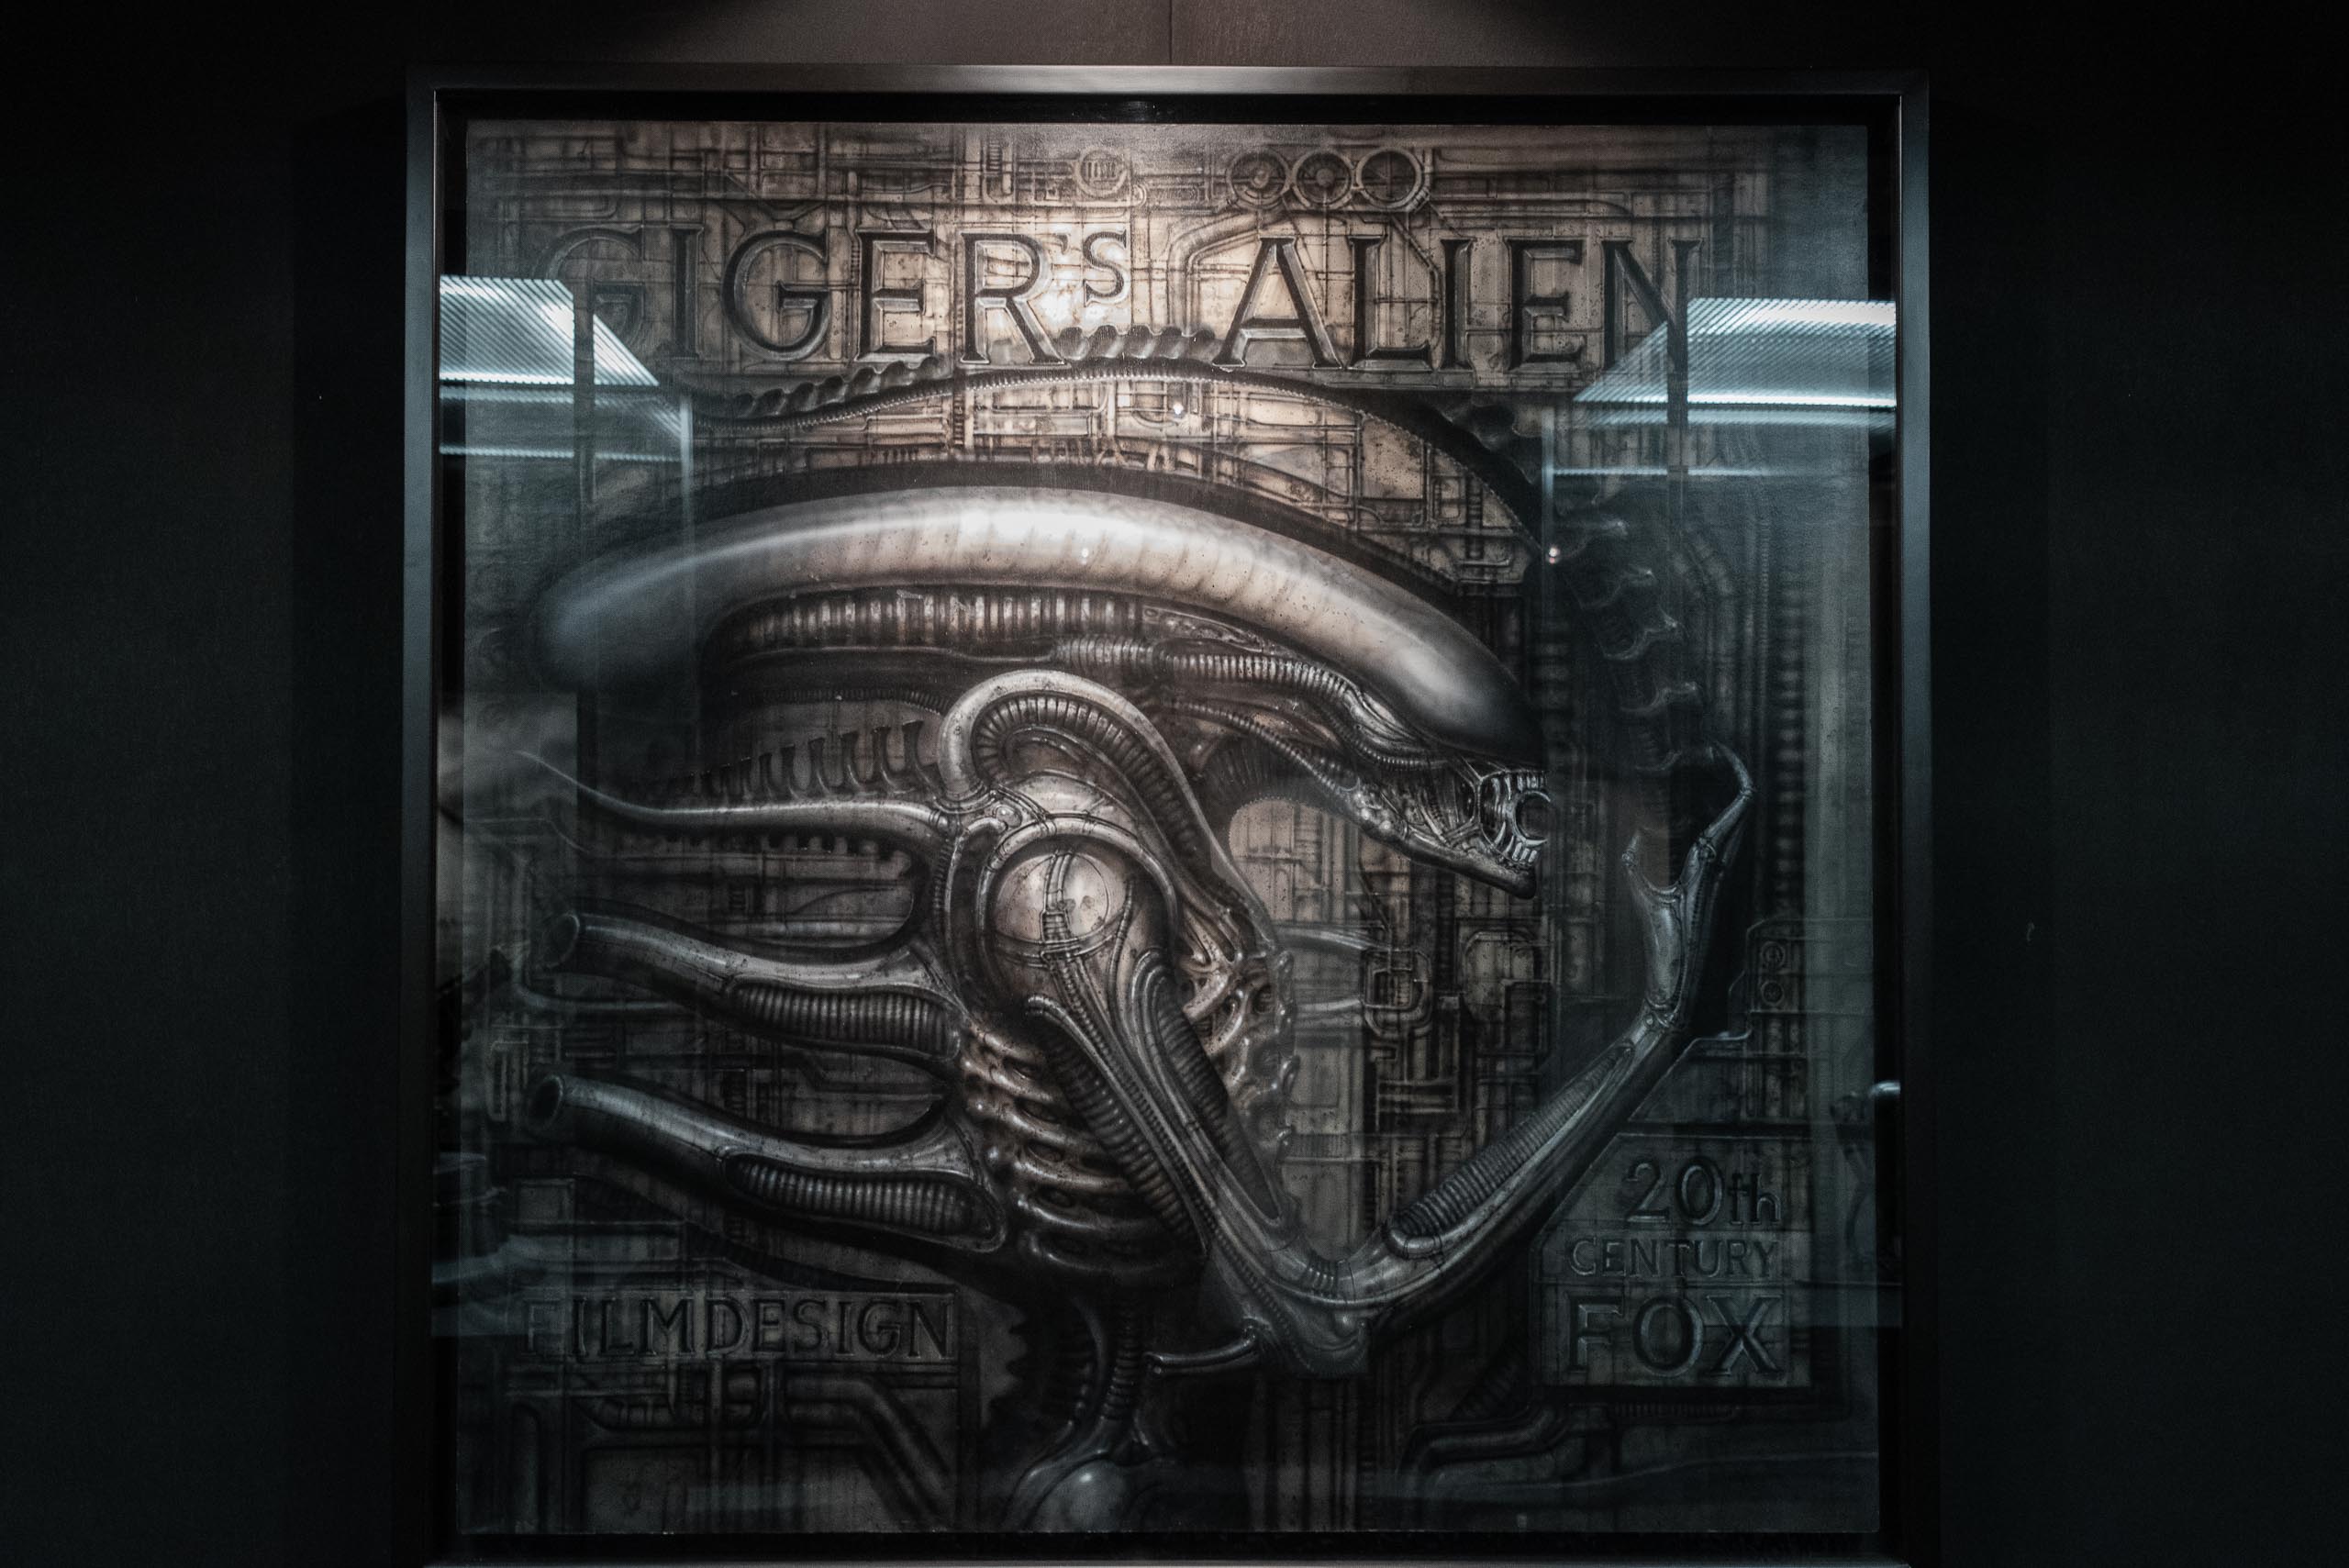 Giger Alien - Muzeum H.R. Giger